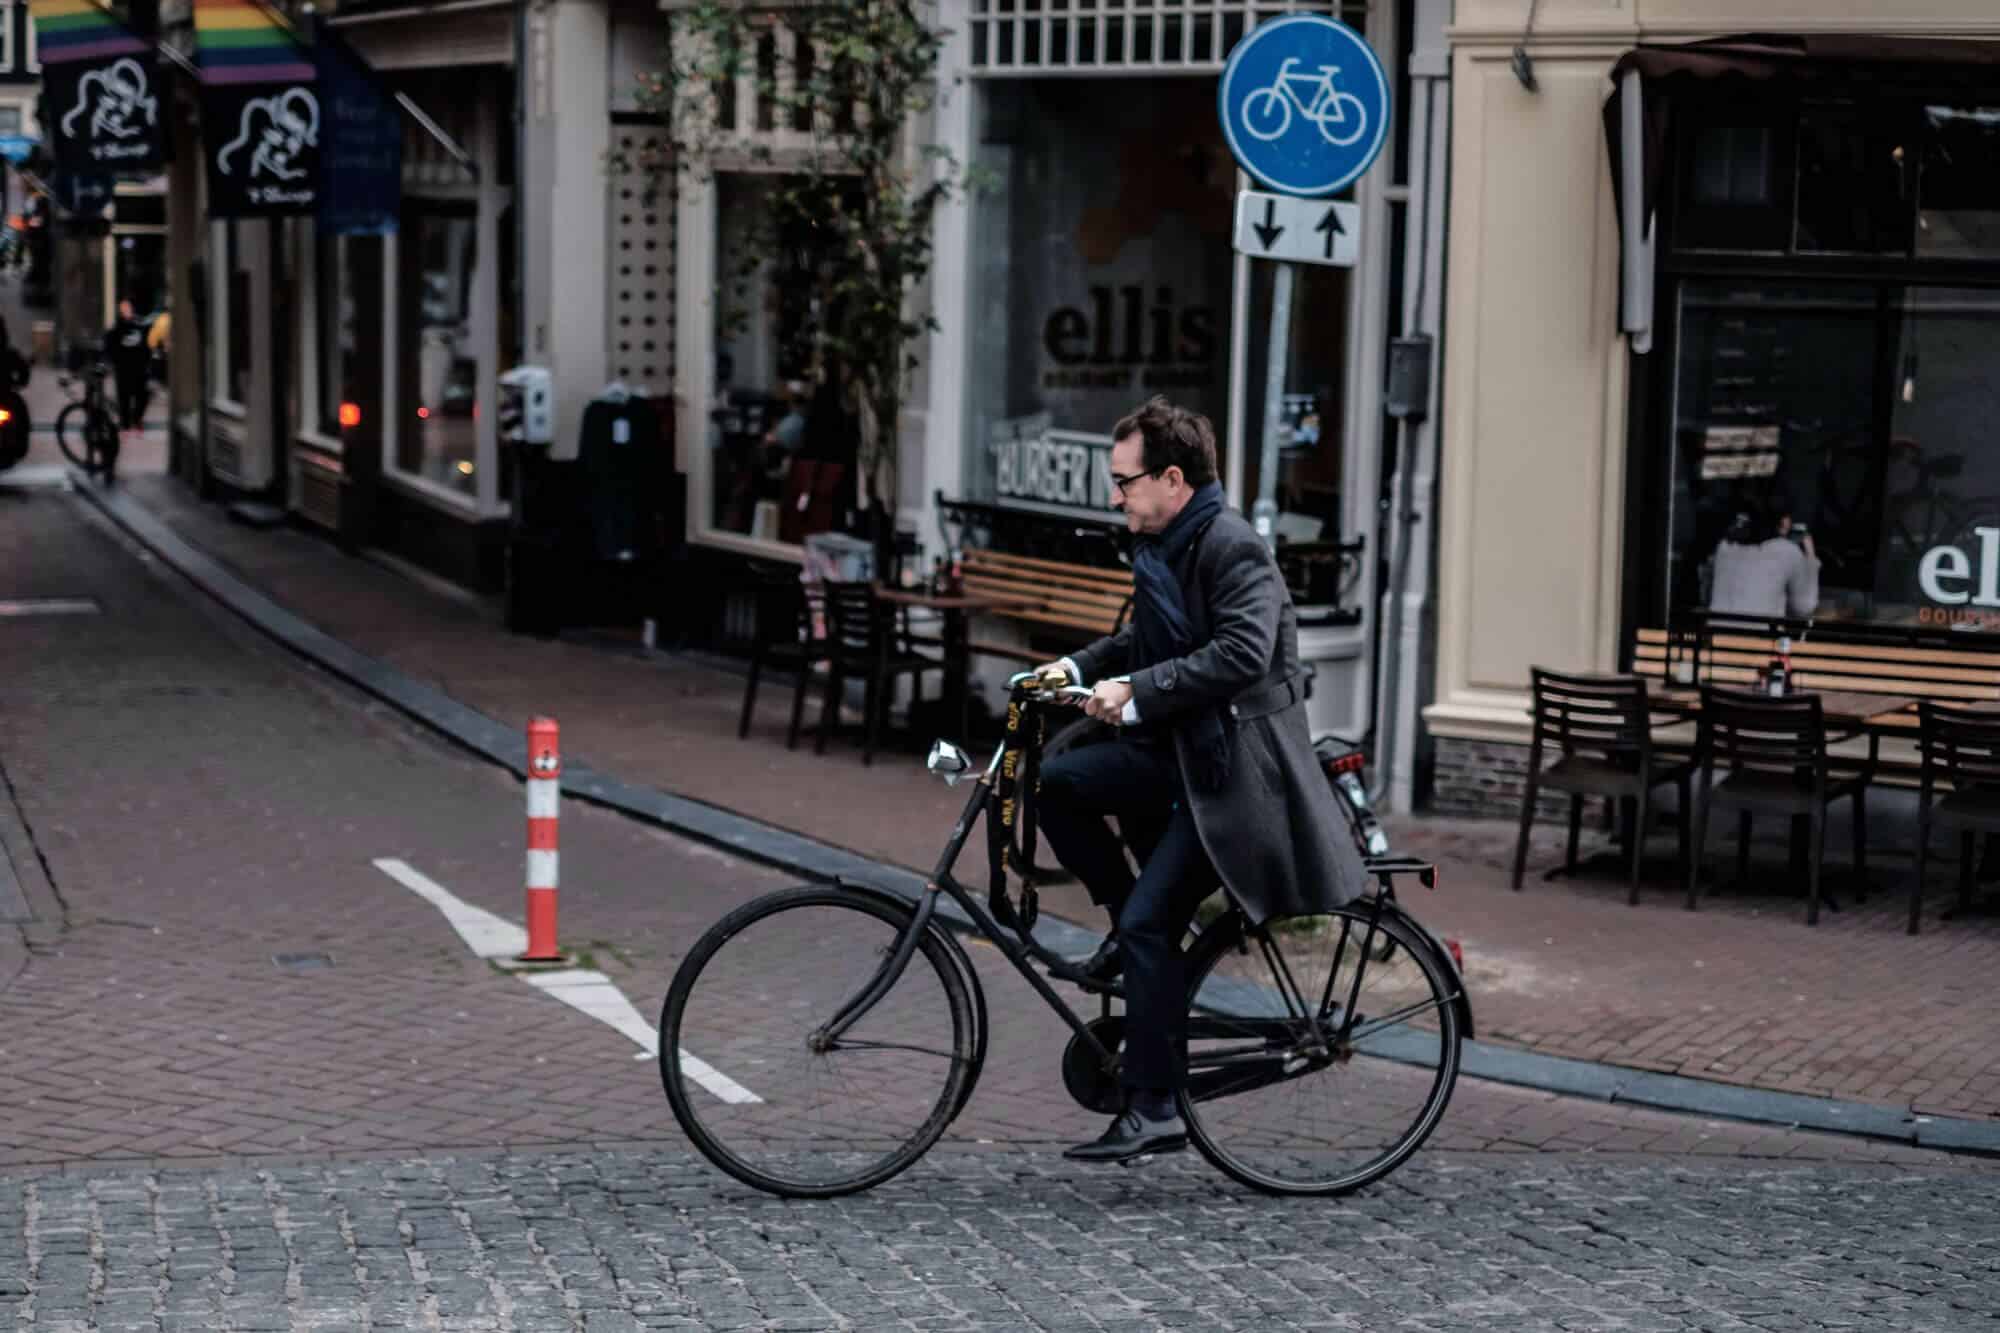 City Bike